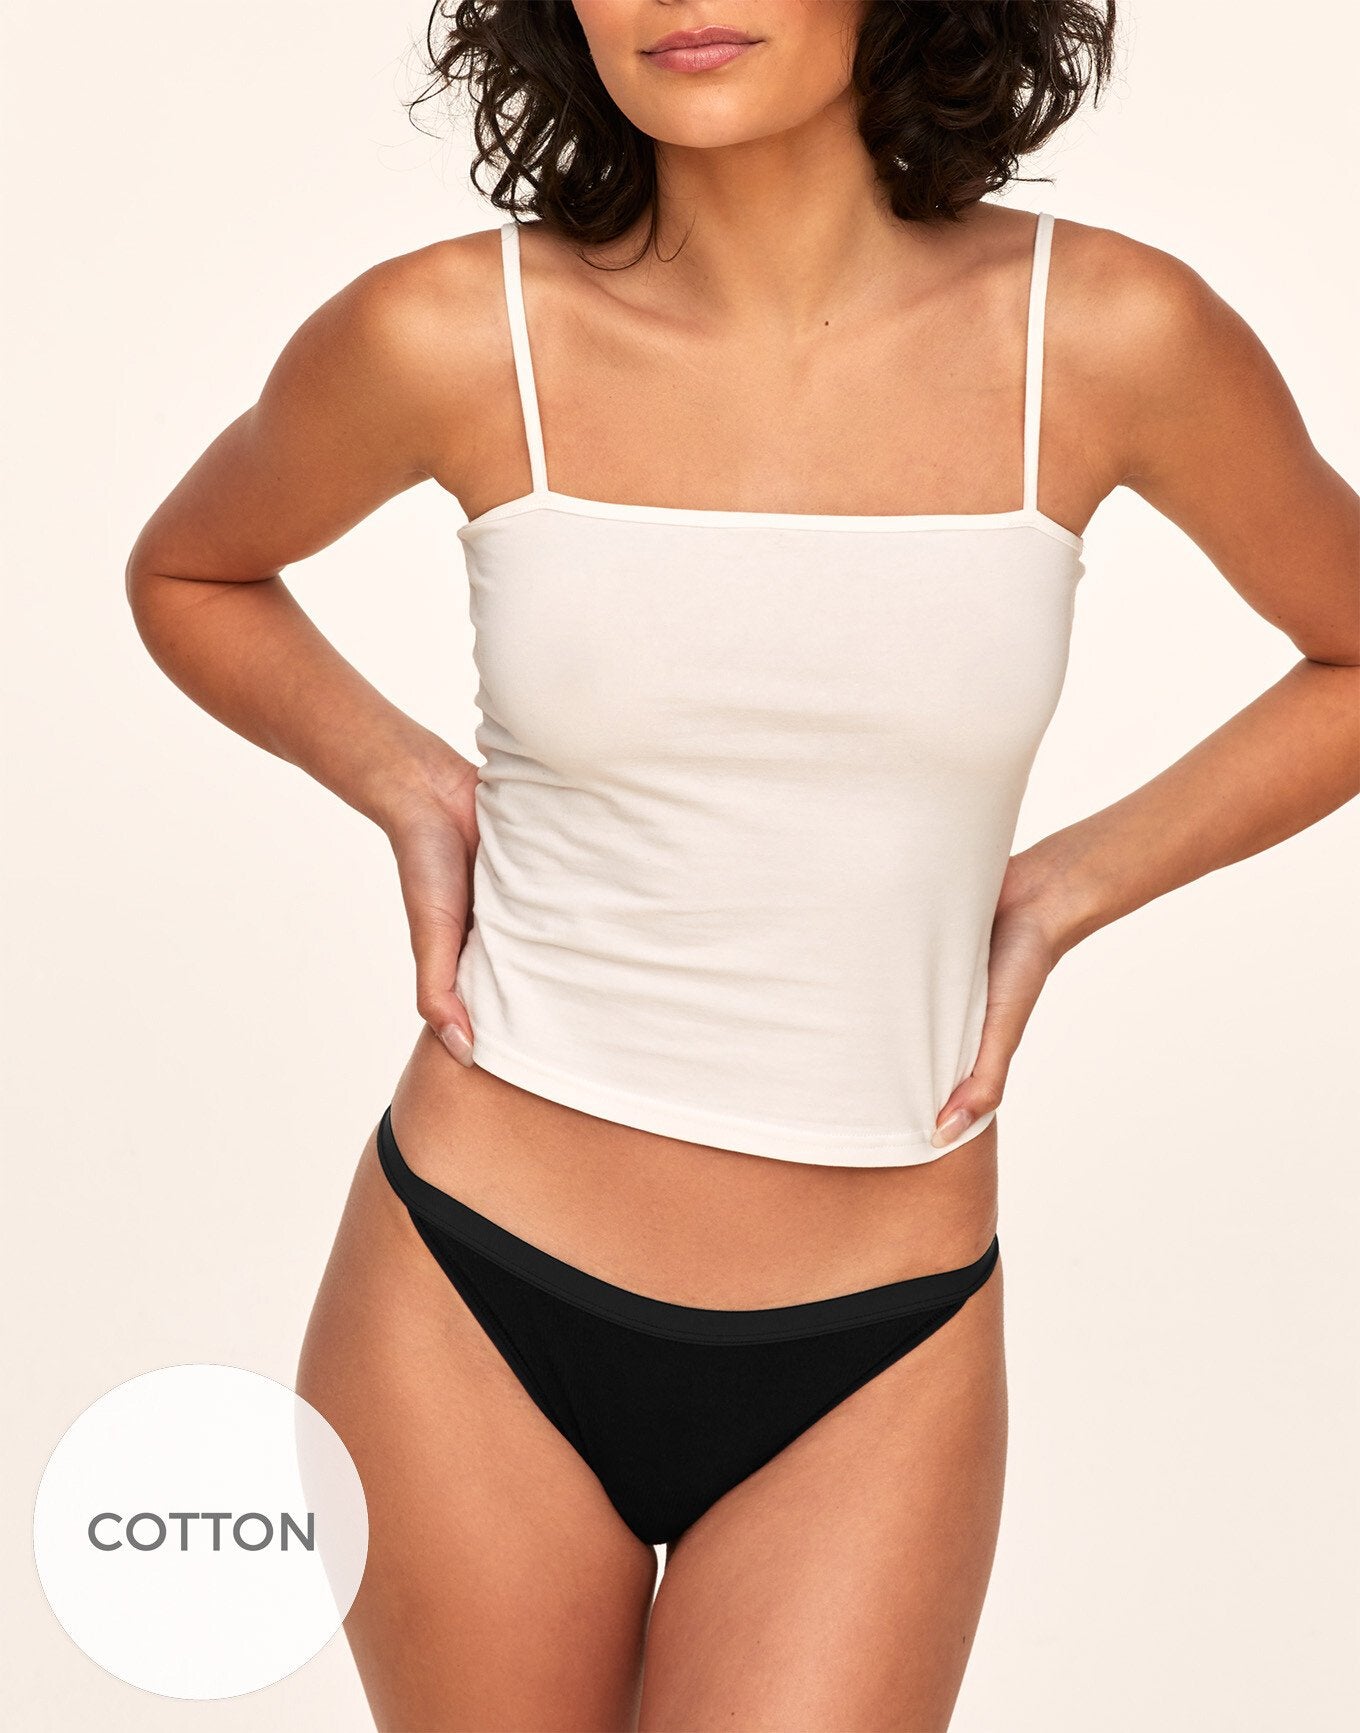 Adore Me Diana Ribbed Cotton Bikini in color PureBlack 2ZUO and shape bikini